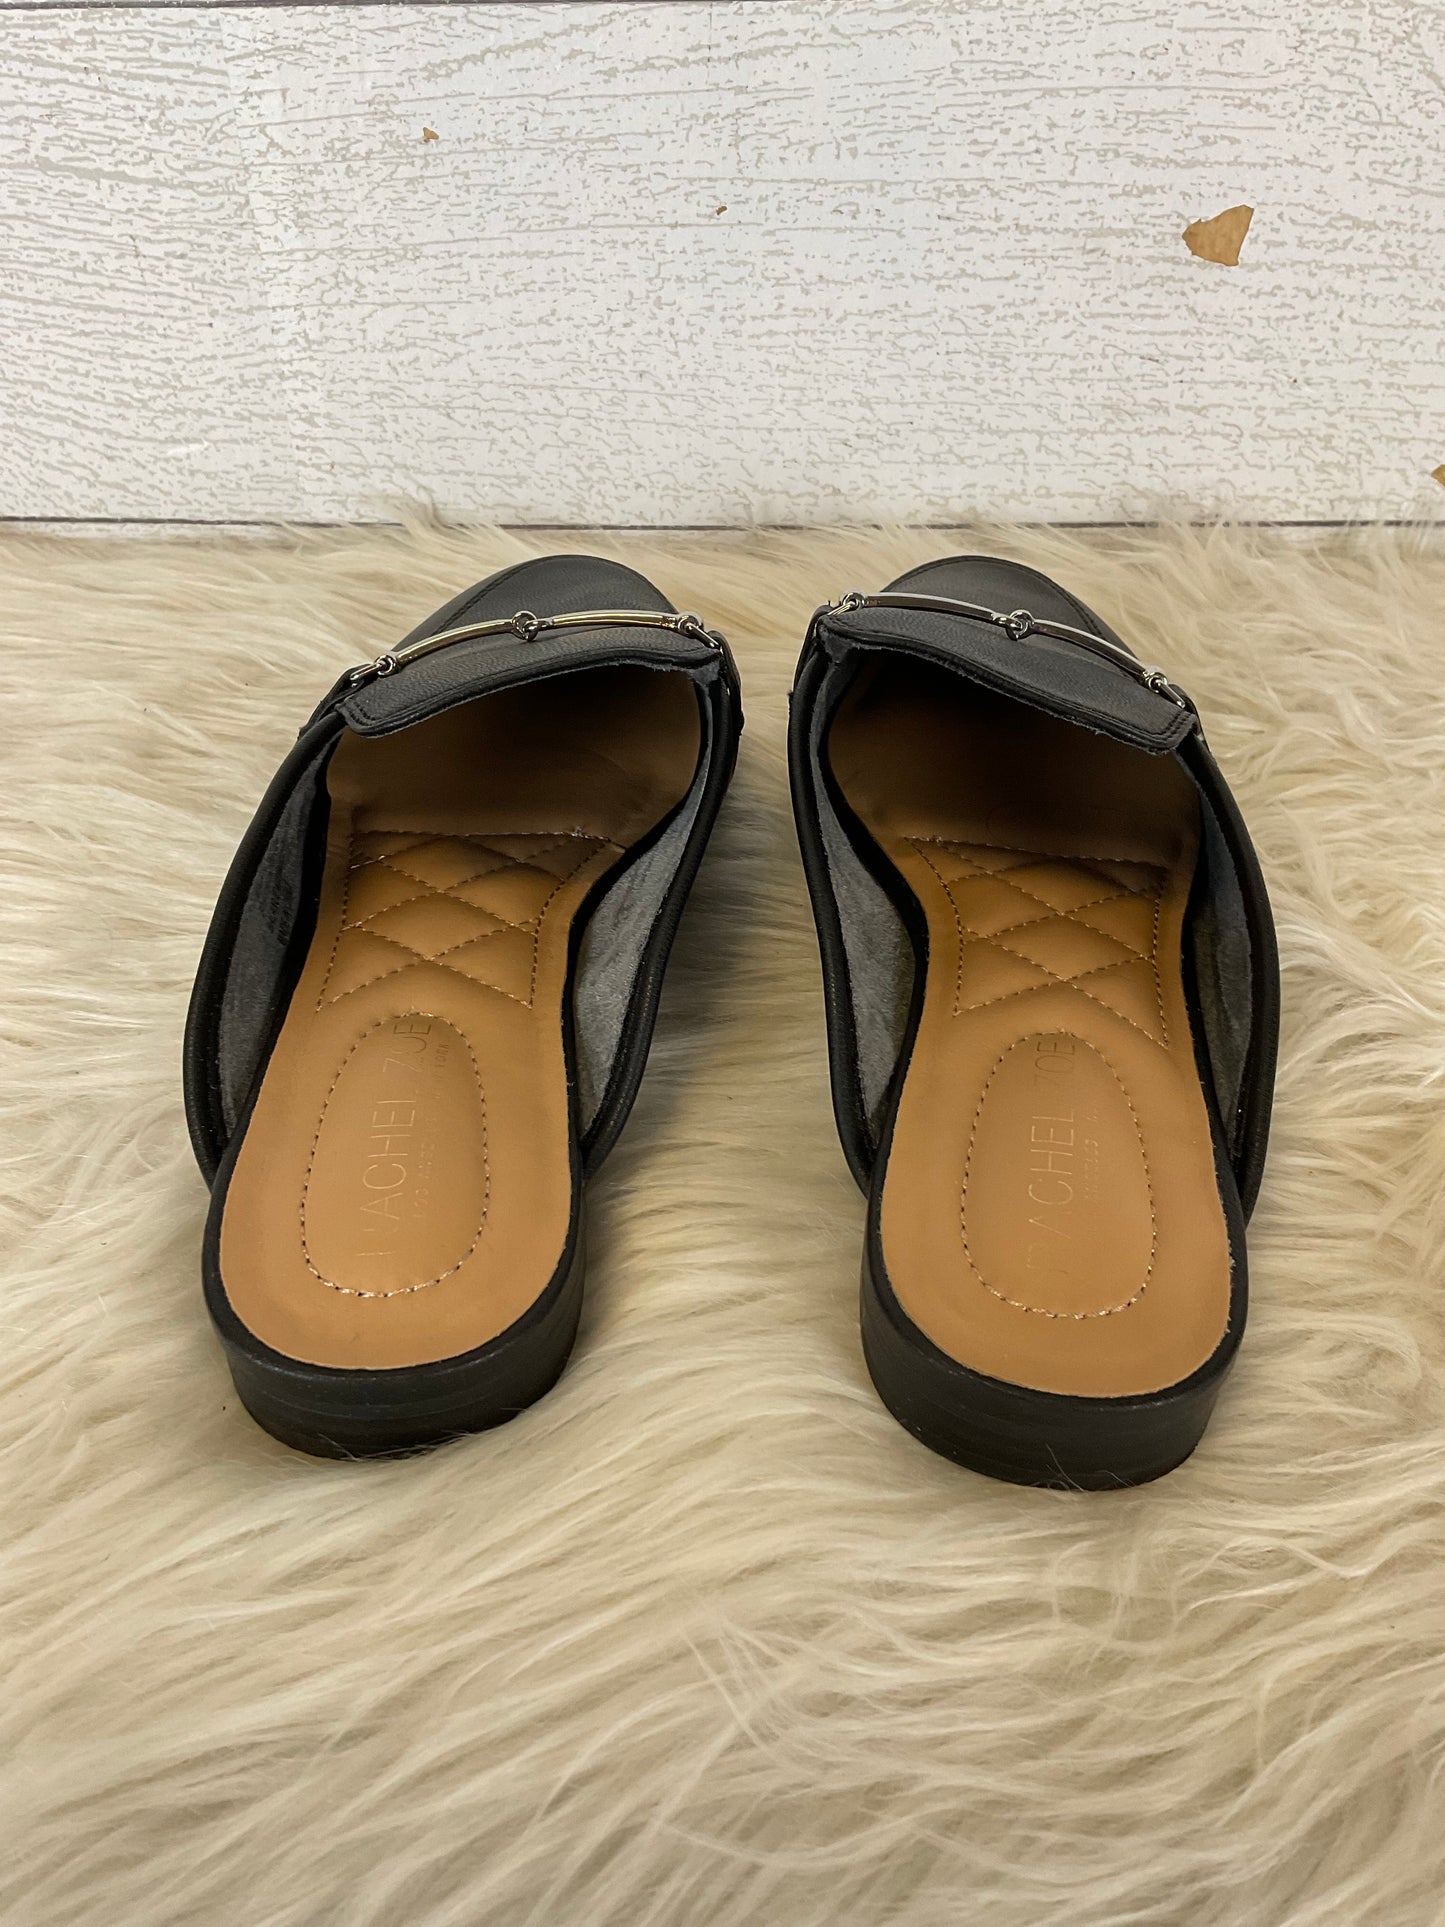 Shoes Flats Mule & Slide By Rachel Zoe  Size: 6.5